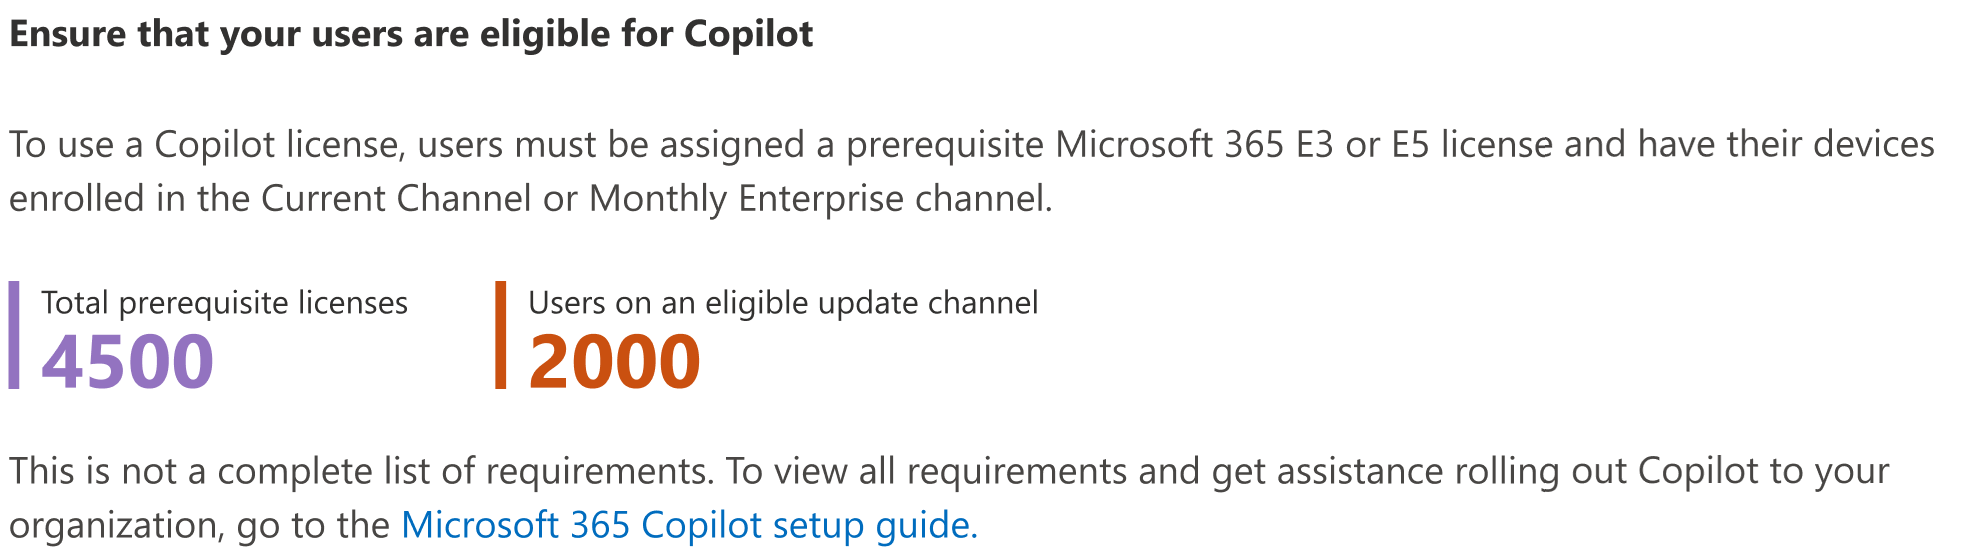 Capture d’écran montrant comment vous pouvez vérifier que les utilisateurs sont éligibles à Copilot pour Microsoft 365.